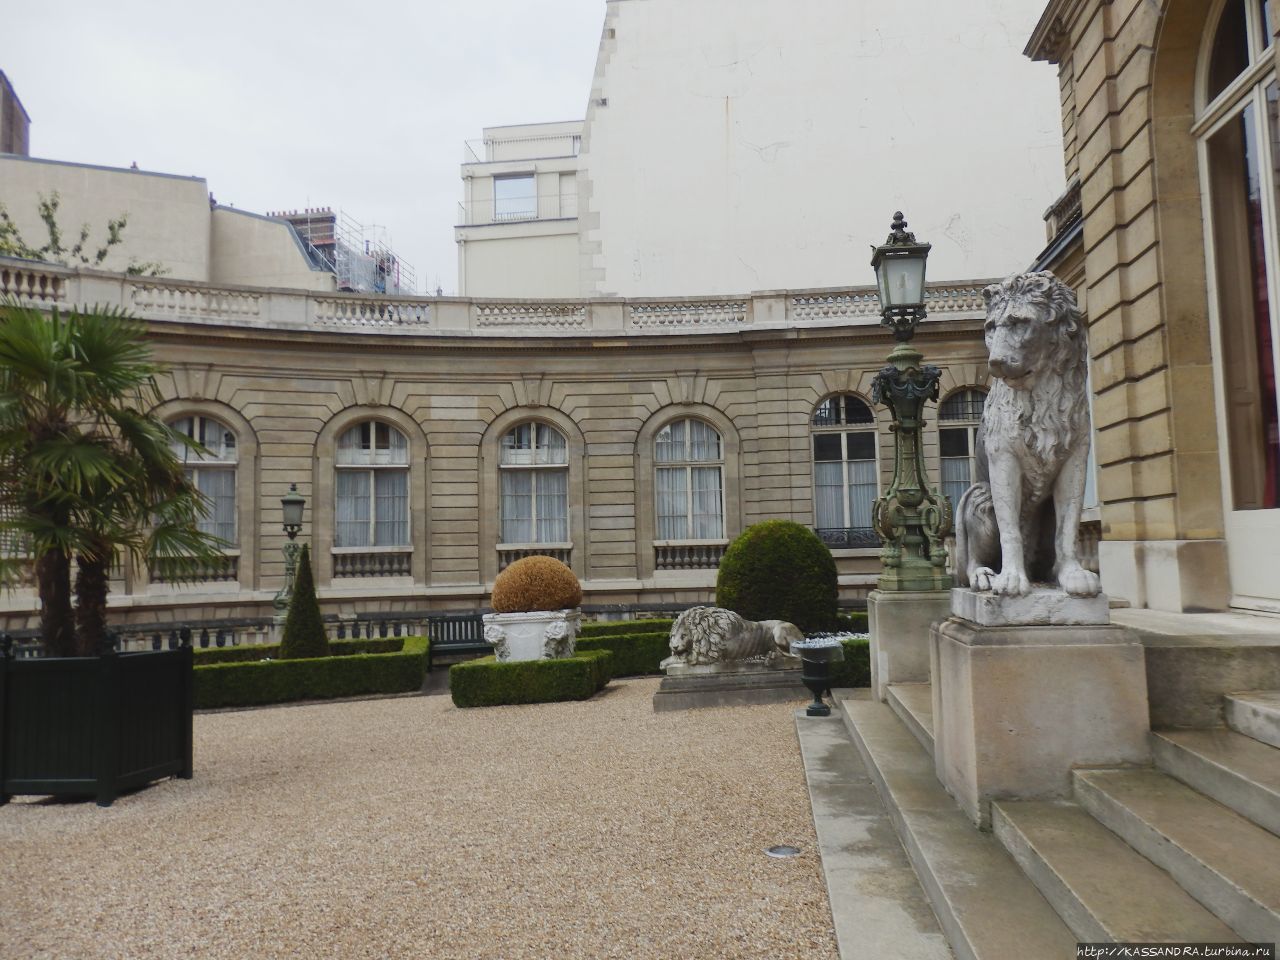 Коллекция музея Жакмар-Андре Париж, Франция